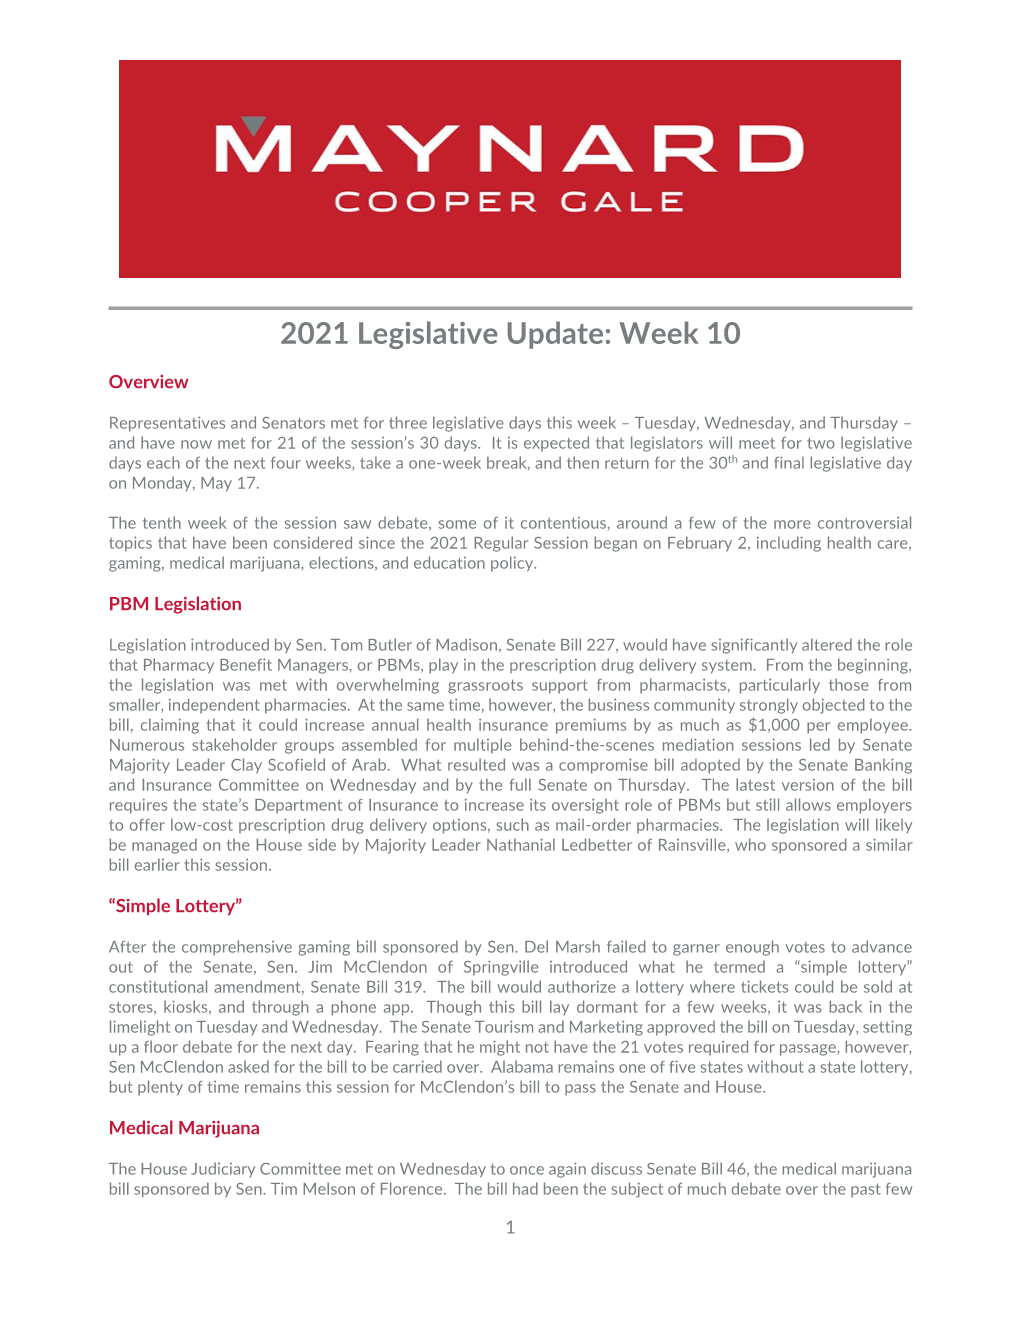 2021 Legislative Update Week 10